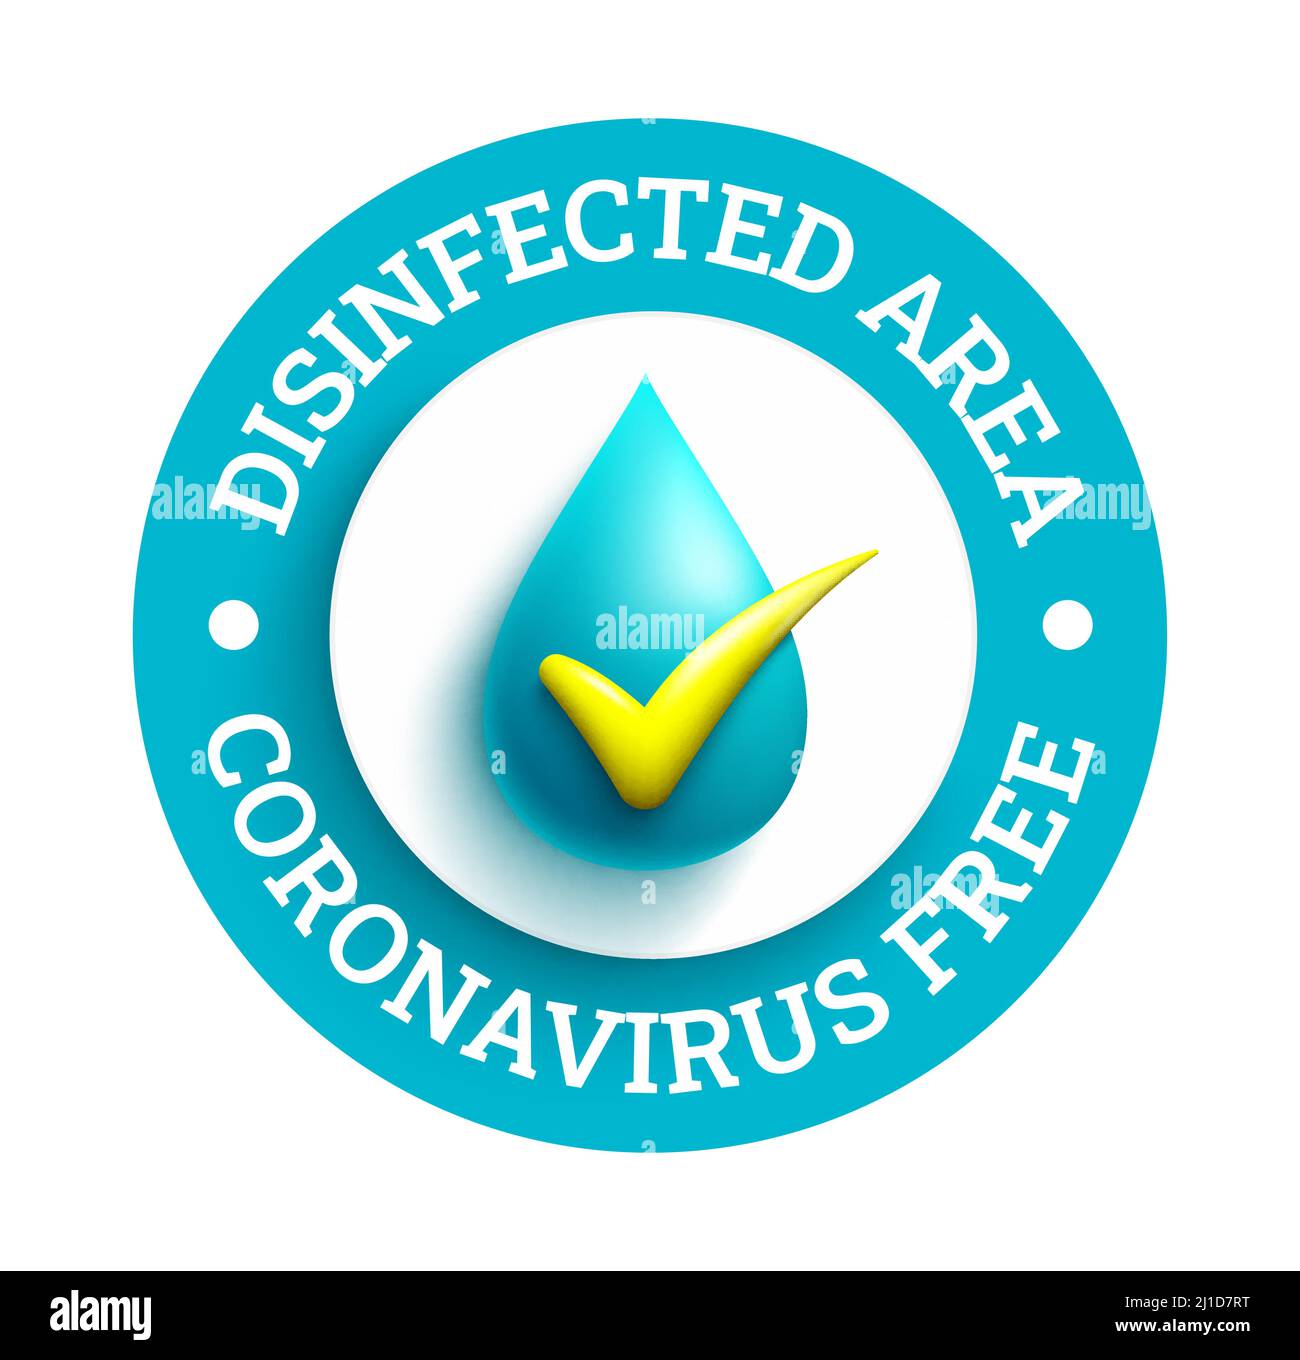 Diseño de vectores sin coronavirus. COVID texto de área libre y desinfectada en el logotipo del círculo con elementos de icono limpios y seguros para la nueva salud pública normal. Ilustración del Vector